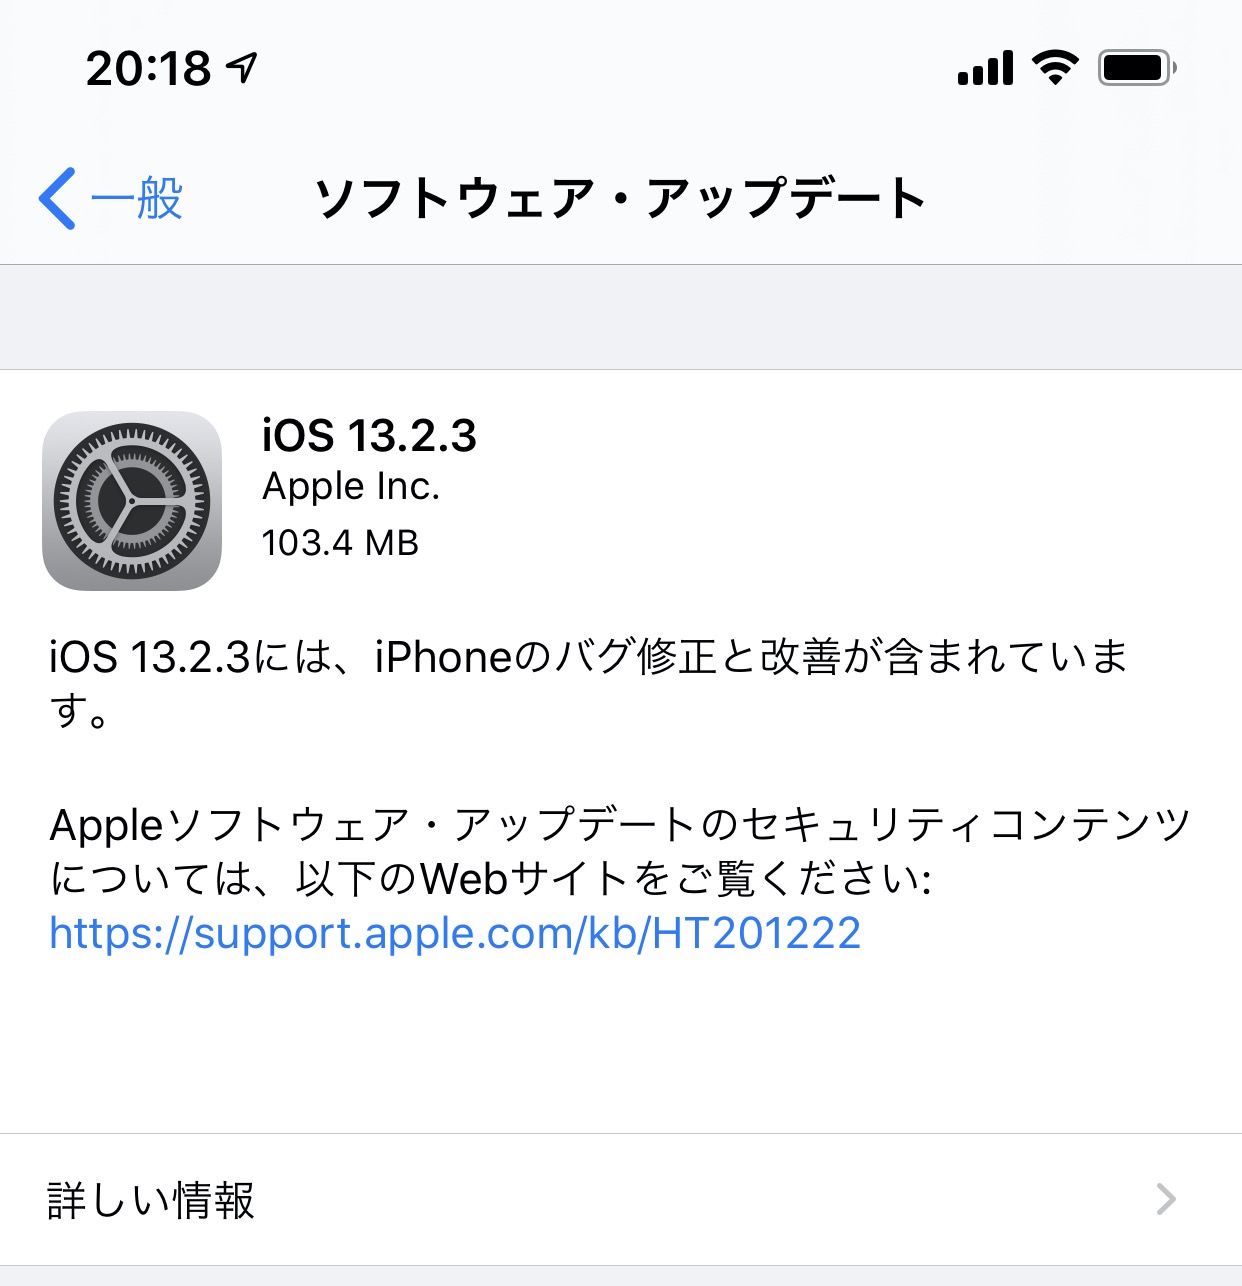 【iOS 13】バグ修正と改善の「iOS 13.2.3 ソフトウェアアップデート」リリース